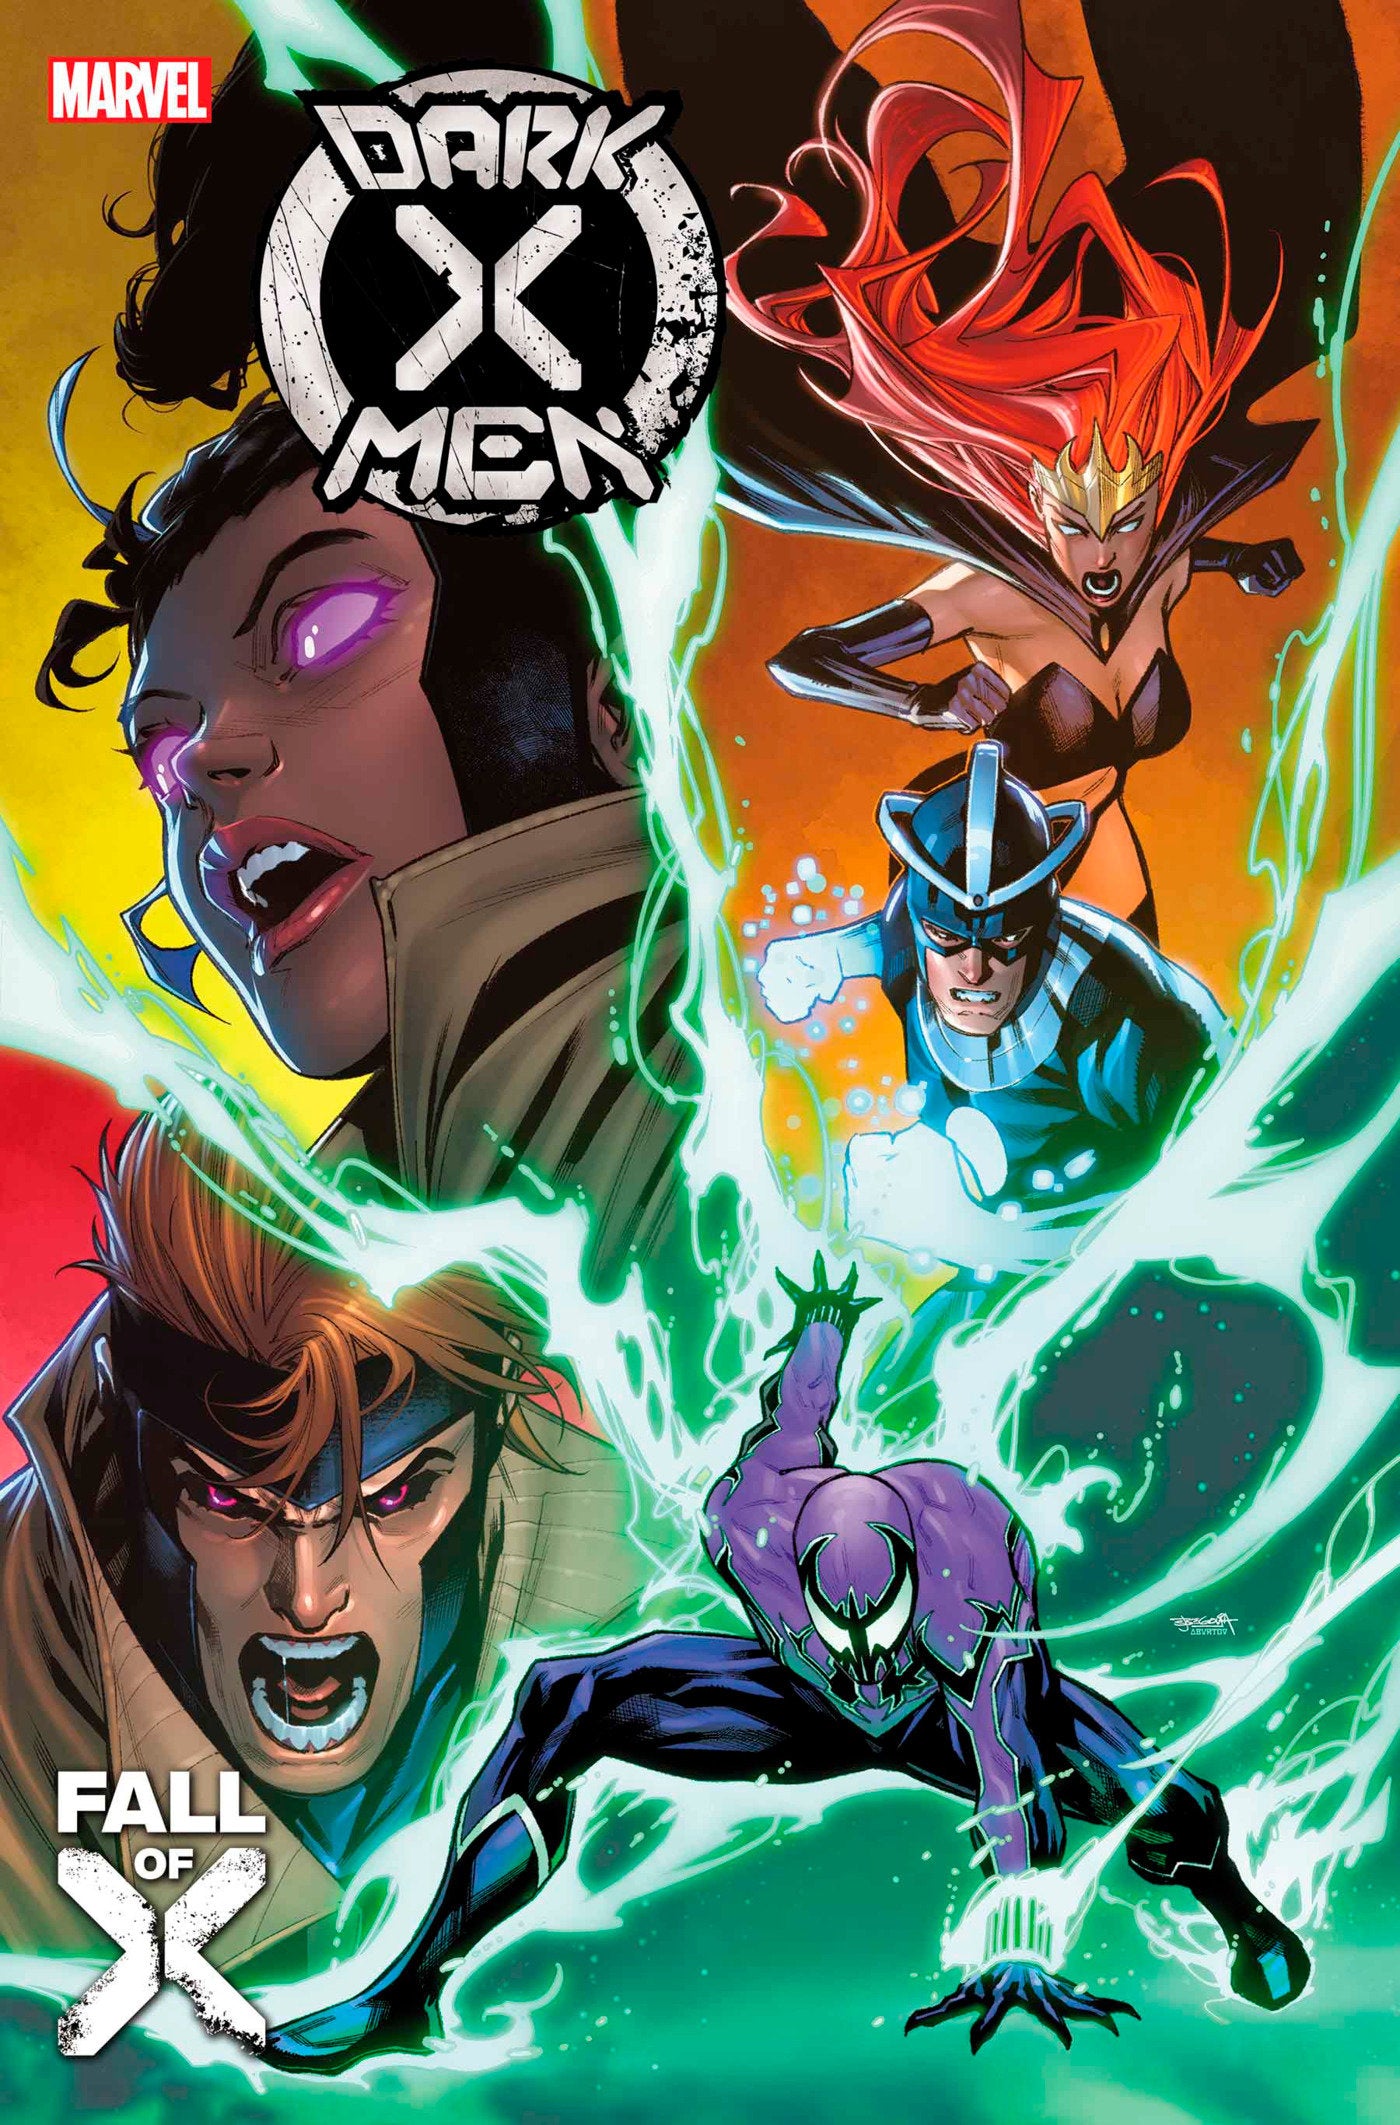 Dark X-Men #4 [Fall]